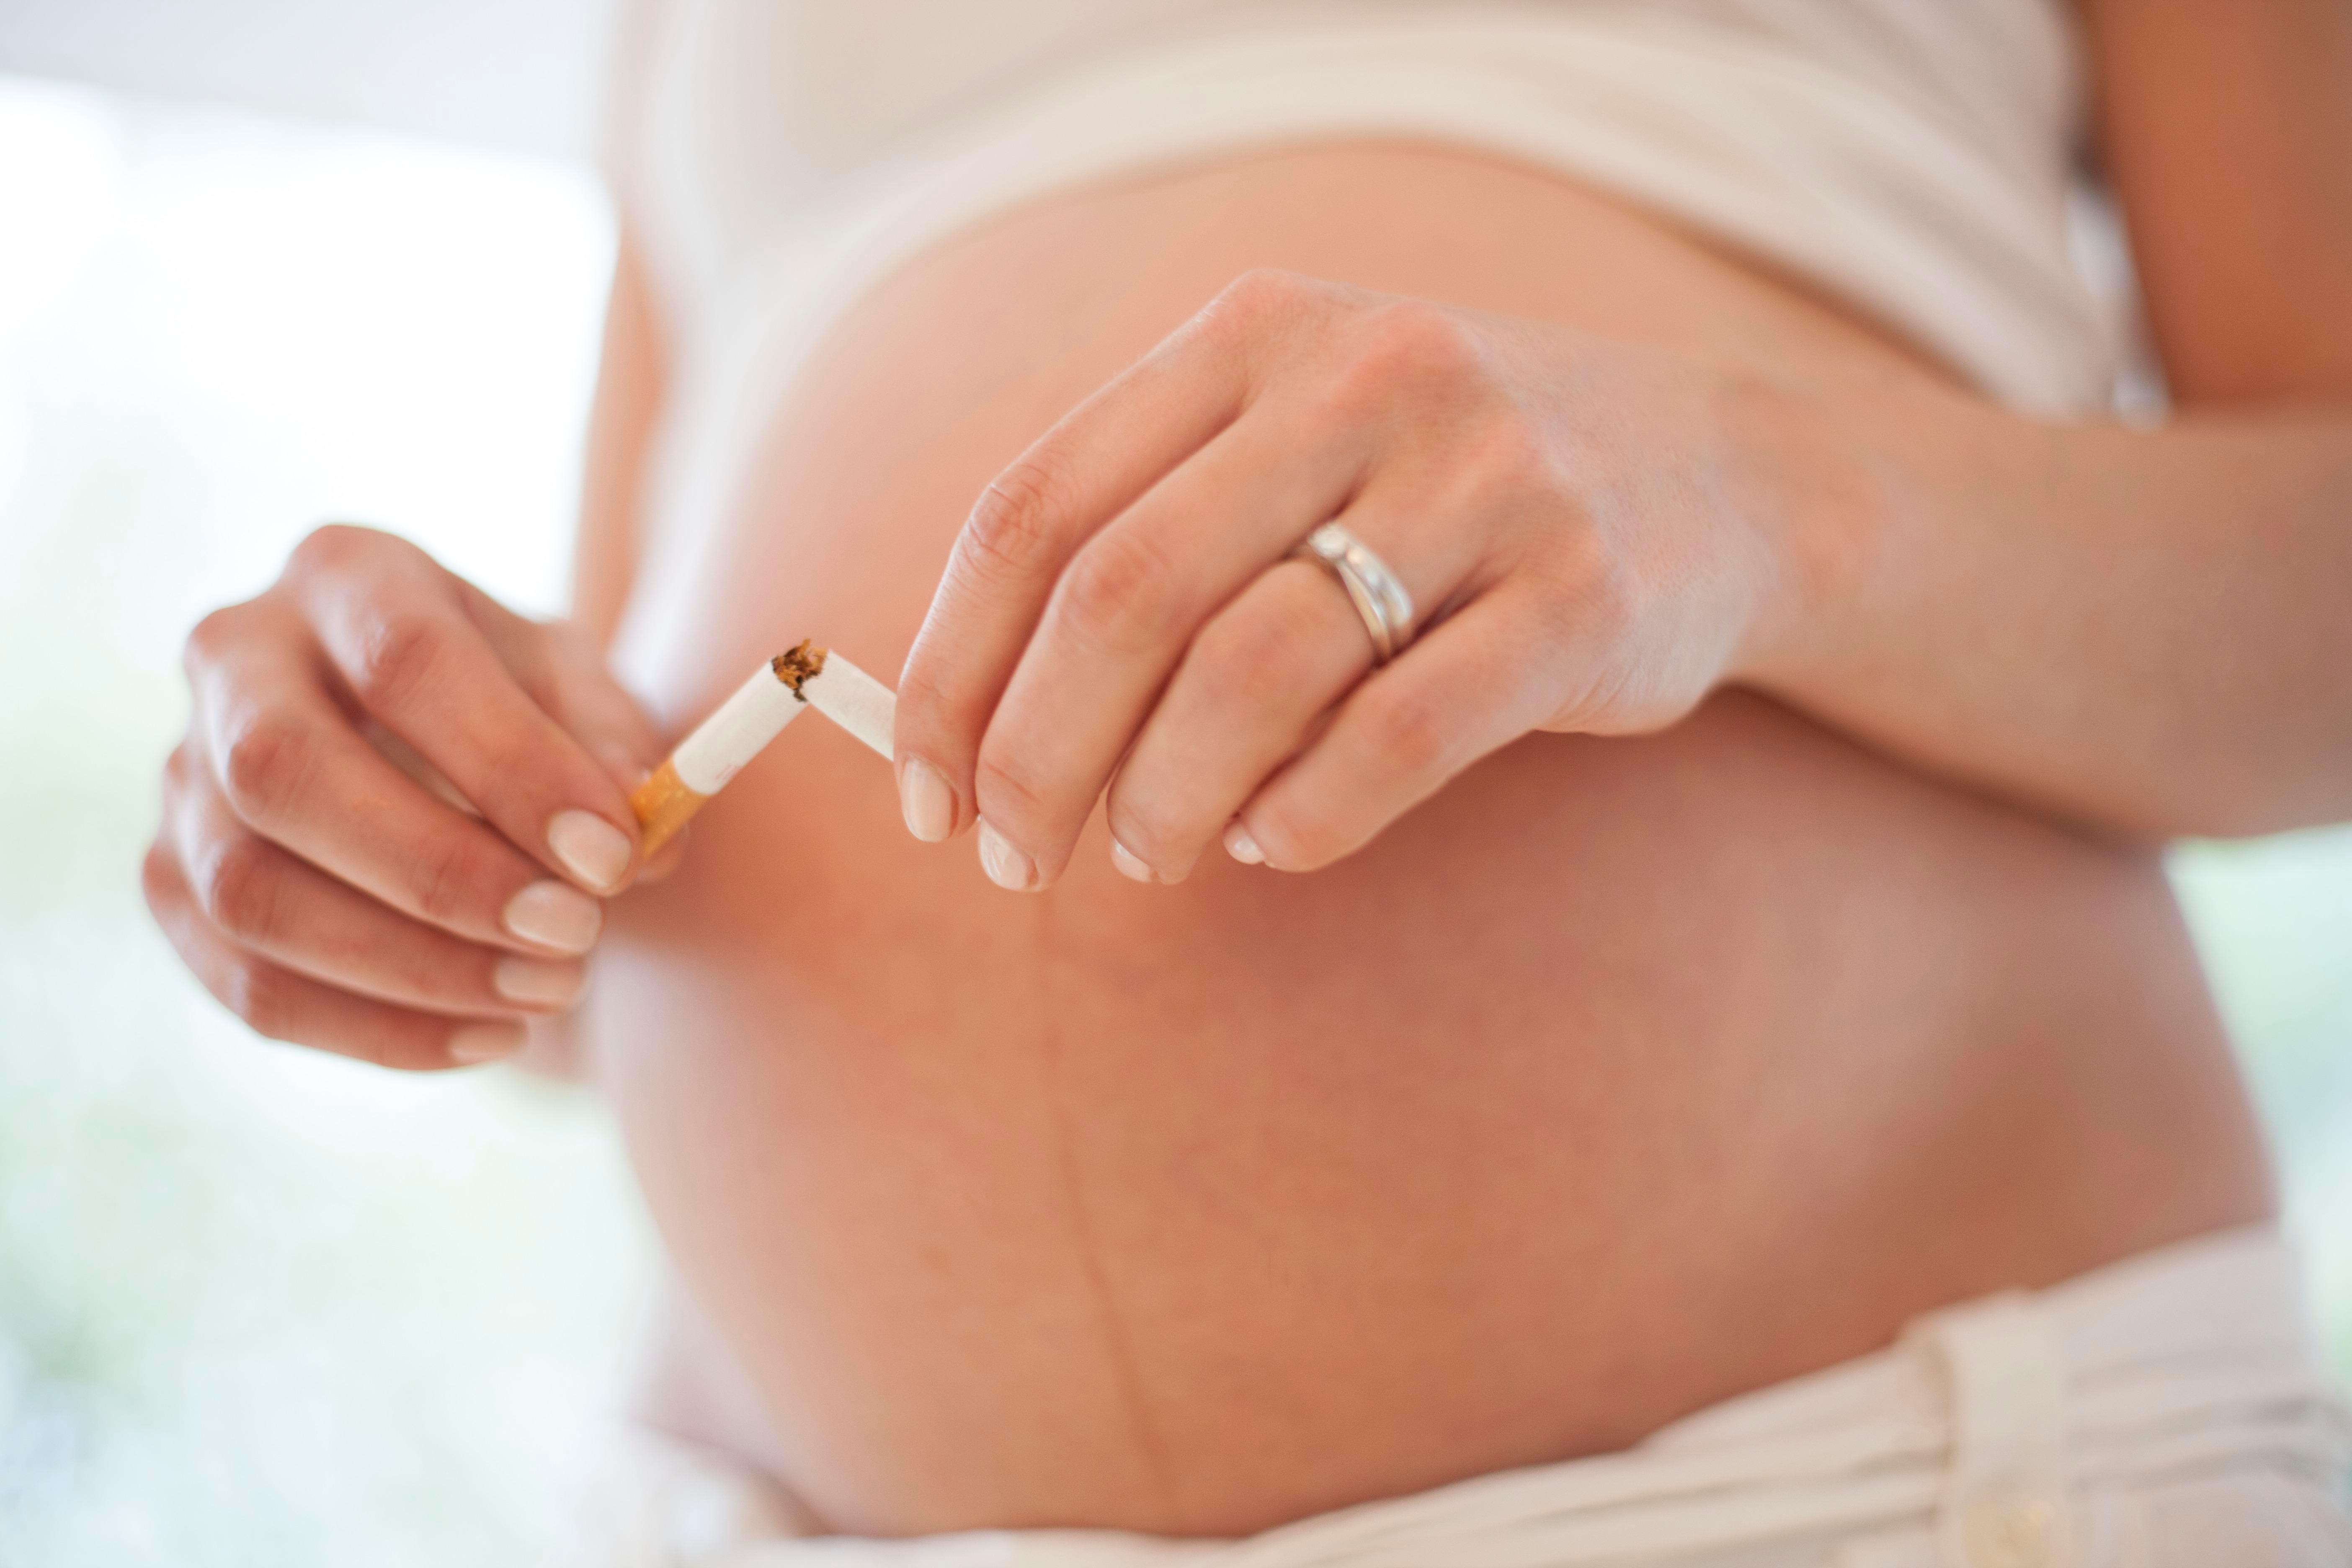 Nikotin zužuje krevní cévy a zhoršuje krevní oběh nenarozeného dítěte